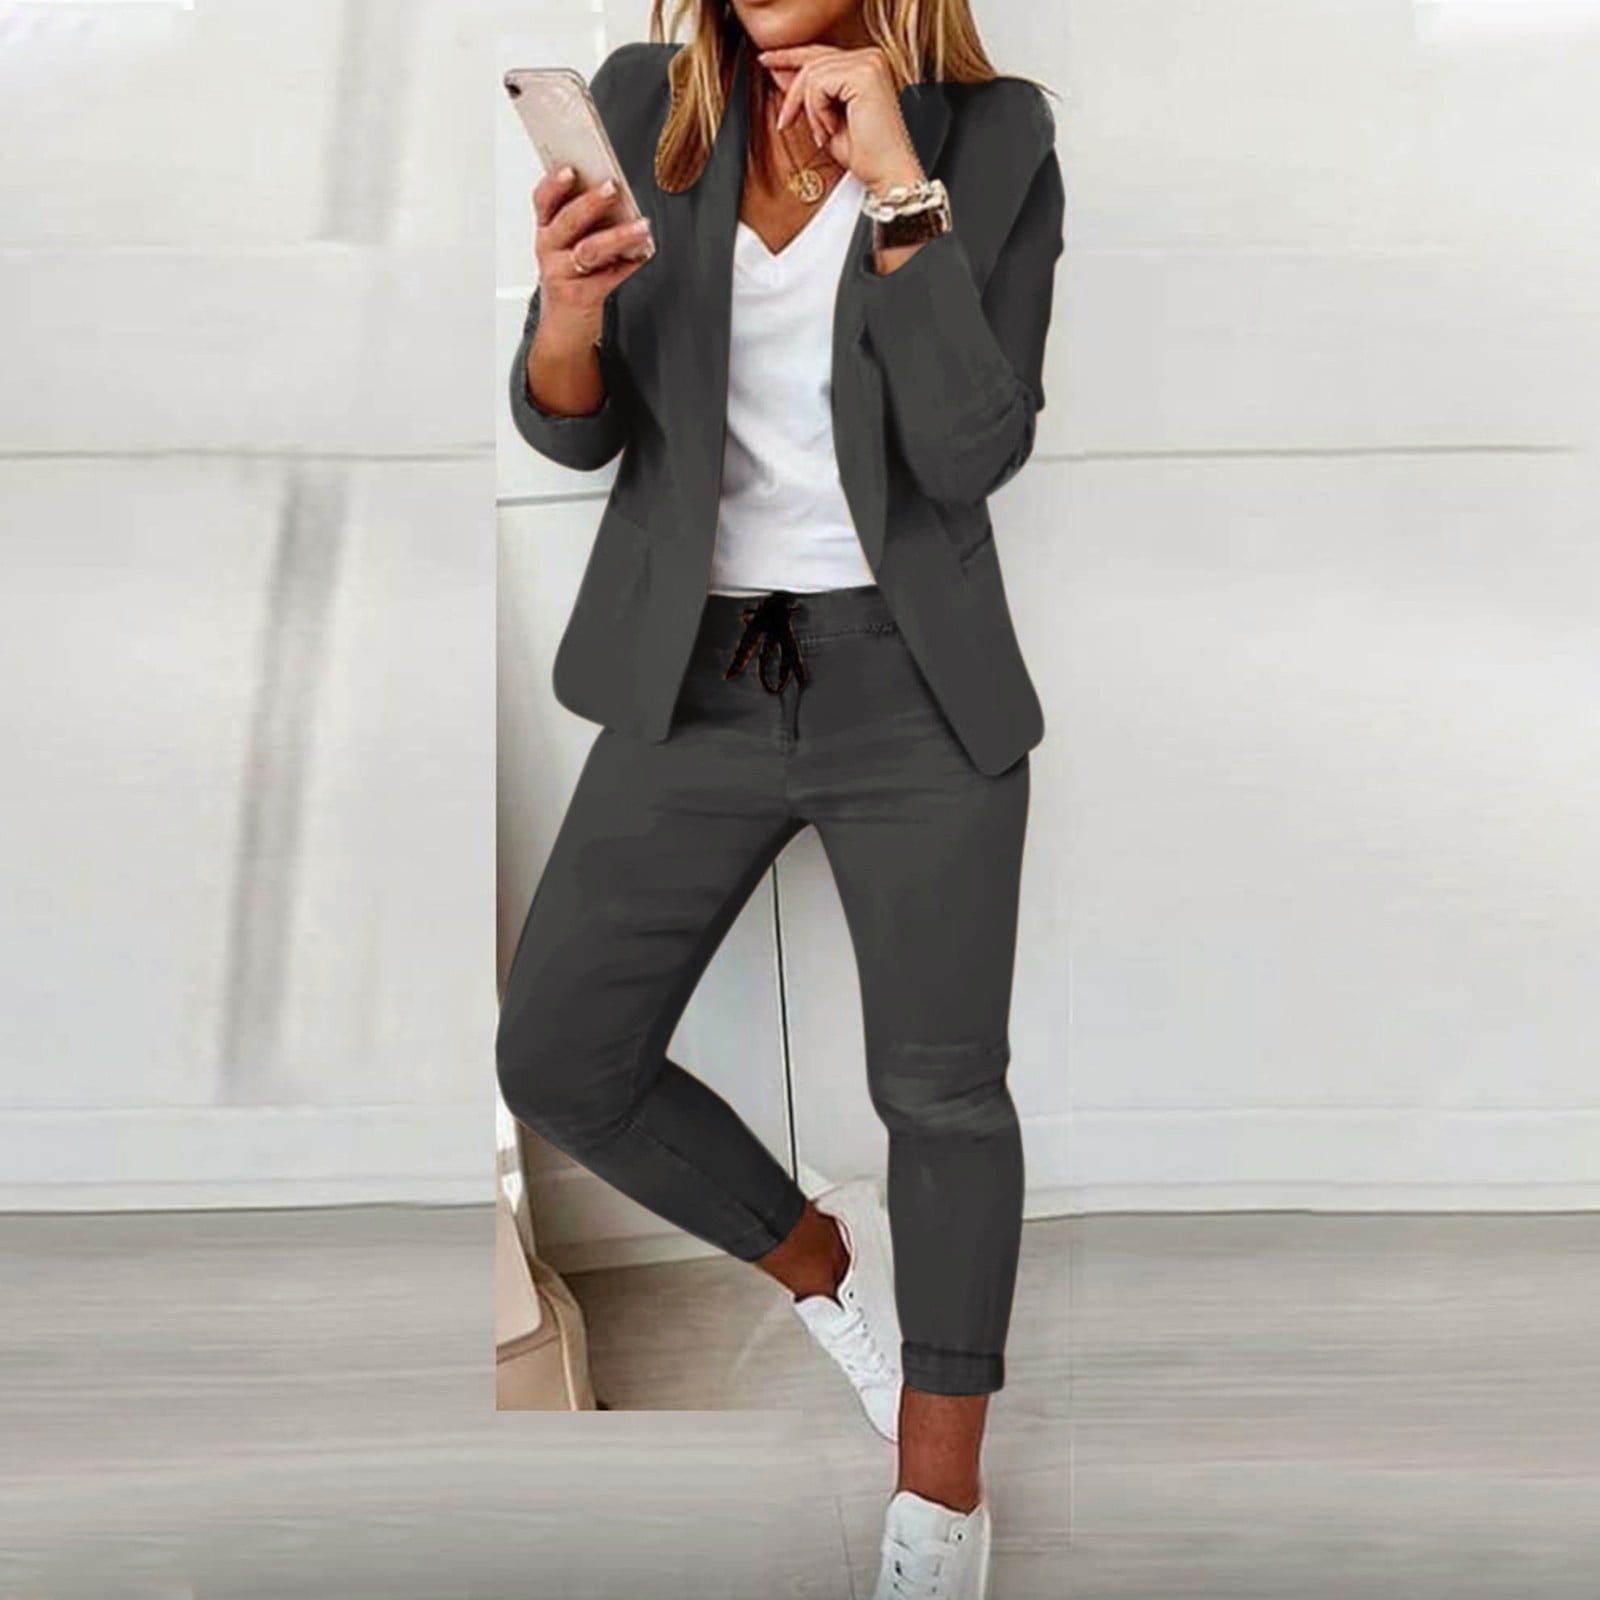 2019 Work Pant Suits for Women Business interview suit set uniform smil  Blazer and Pencil Nine points Pant OL Office 2 Piece Set - AliExpress